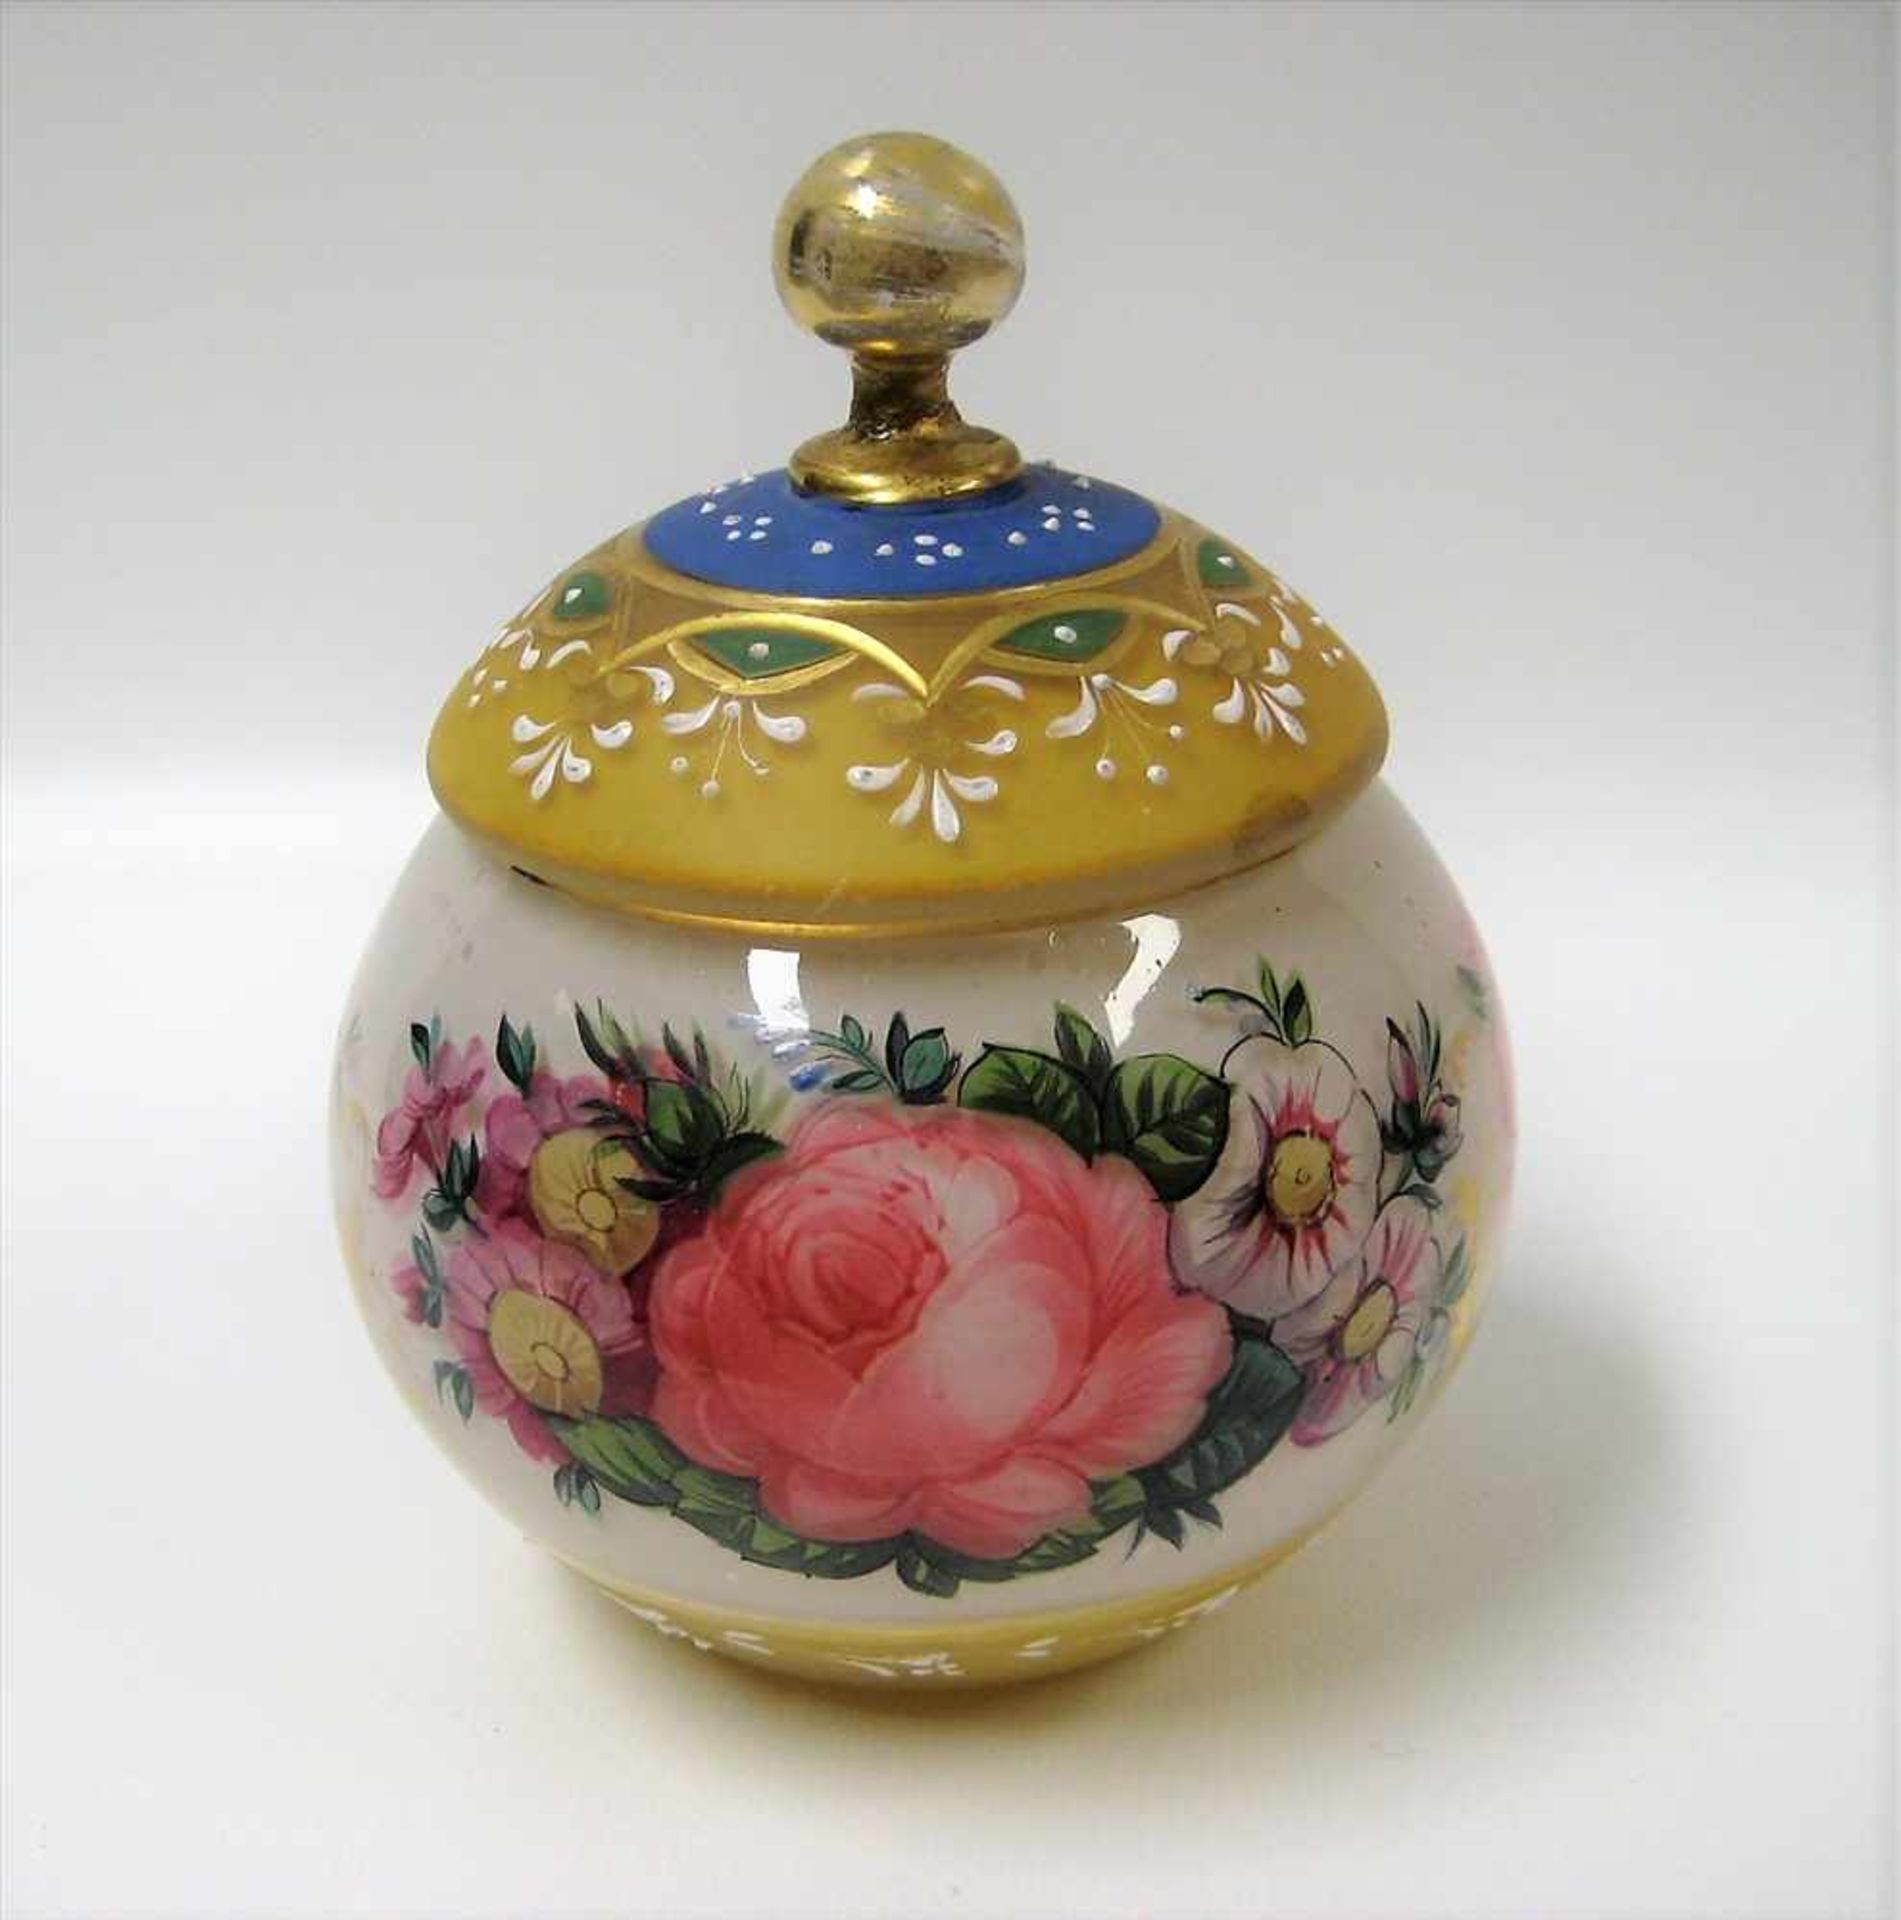 Deckeldose, 19. Jahrhundert, Glas mit feiner, polychromer Blüten- und Goldmalerei, Knauf geklebt,